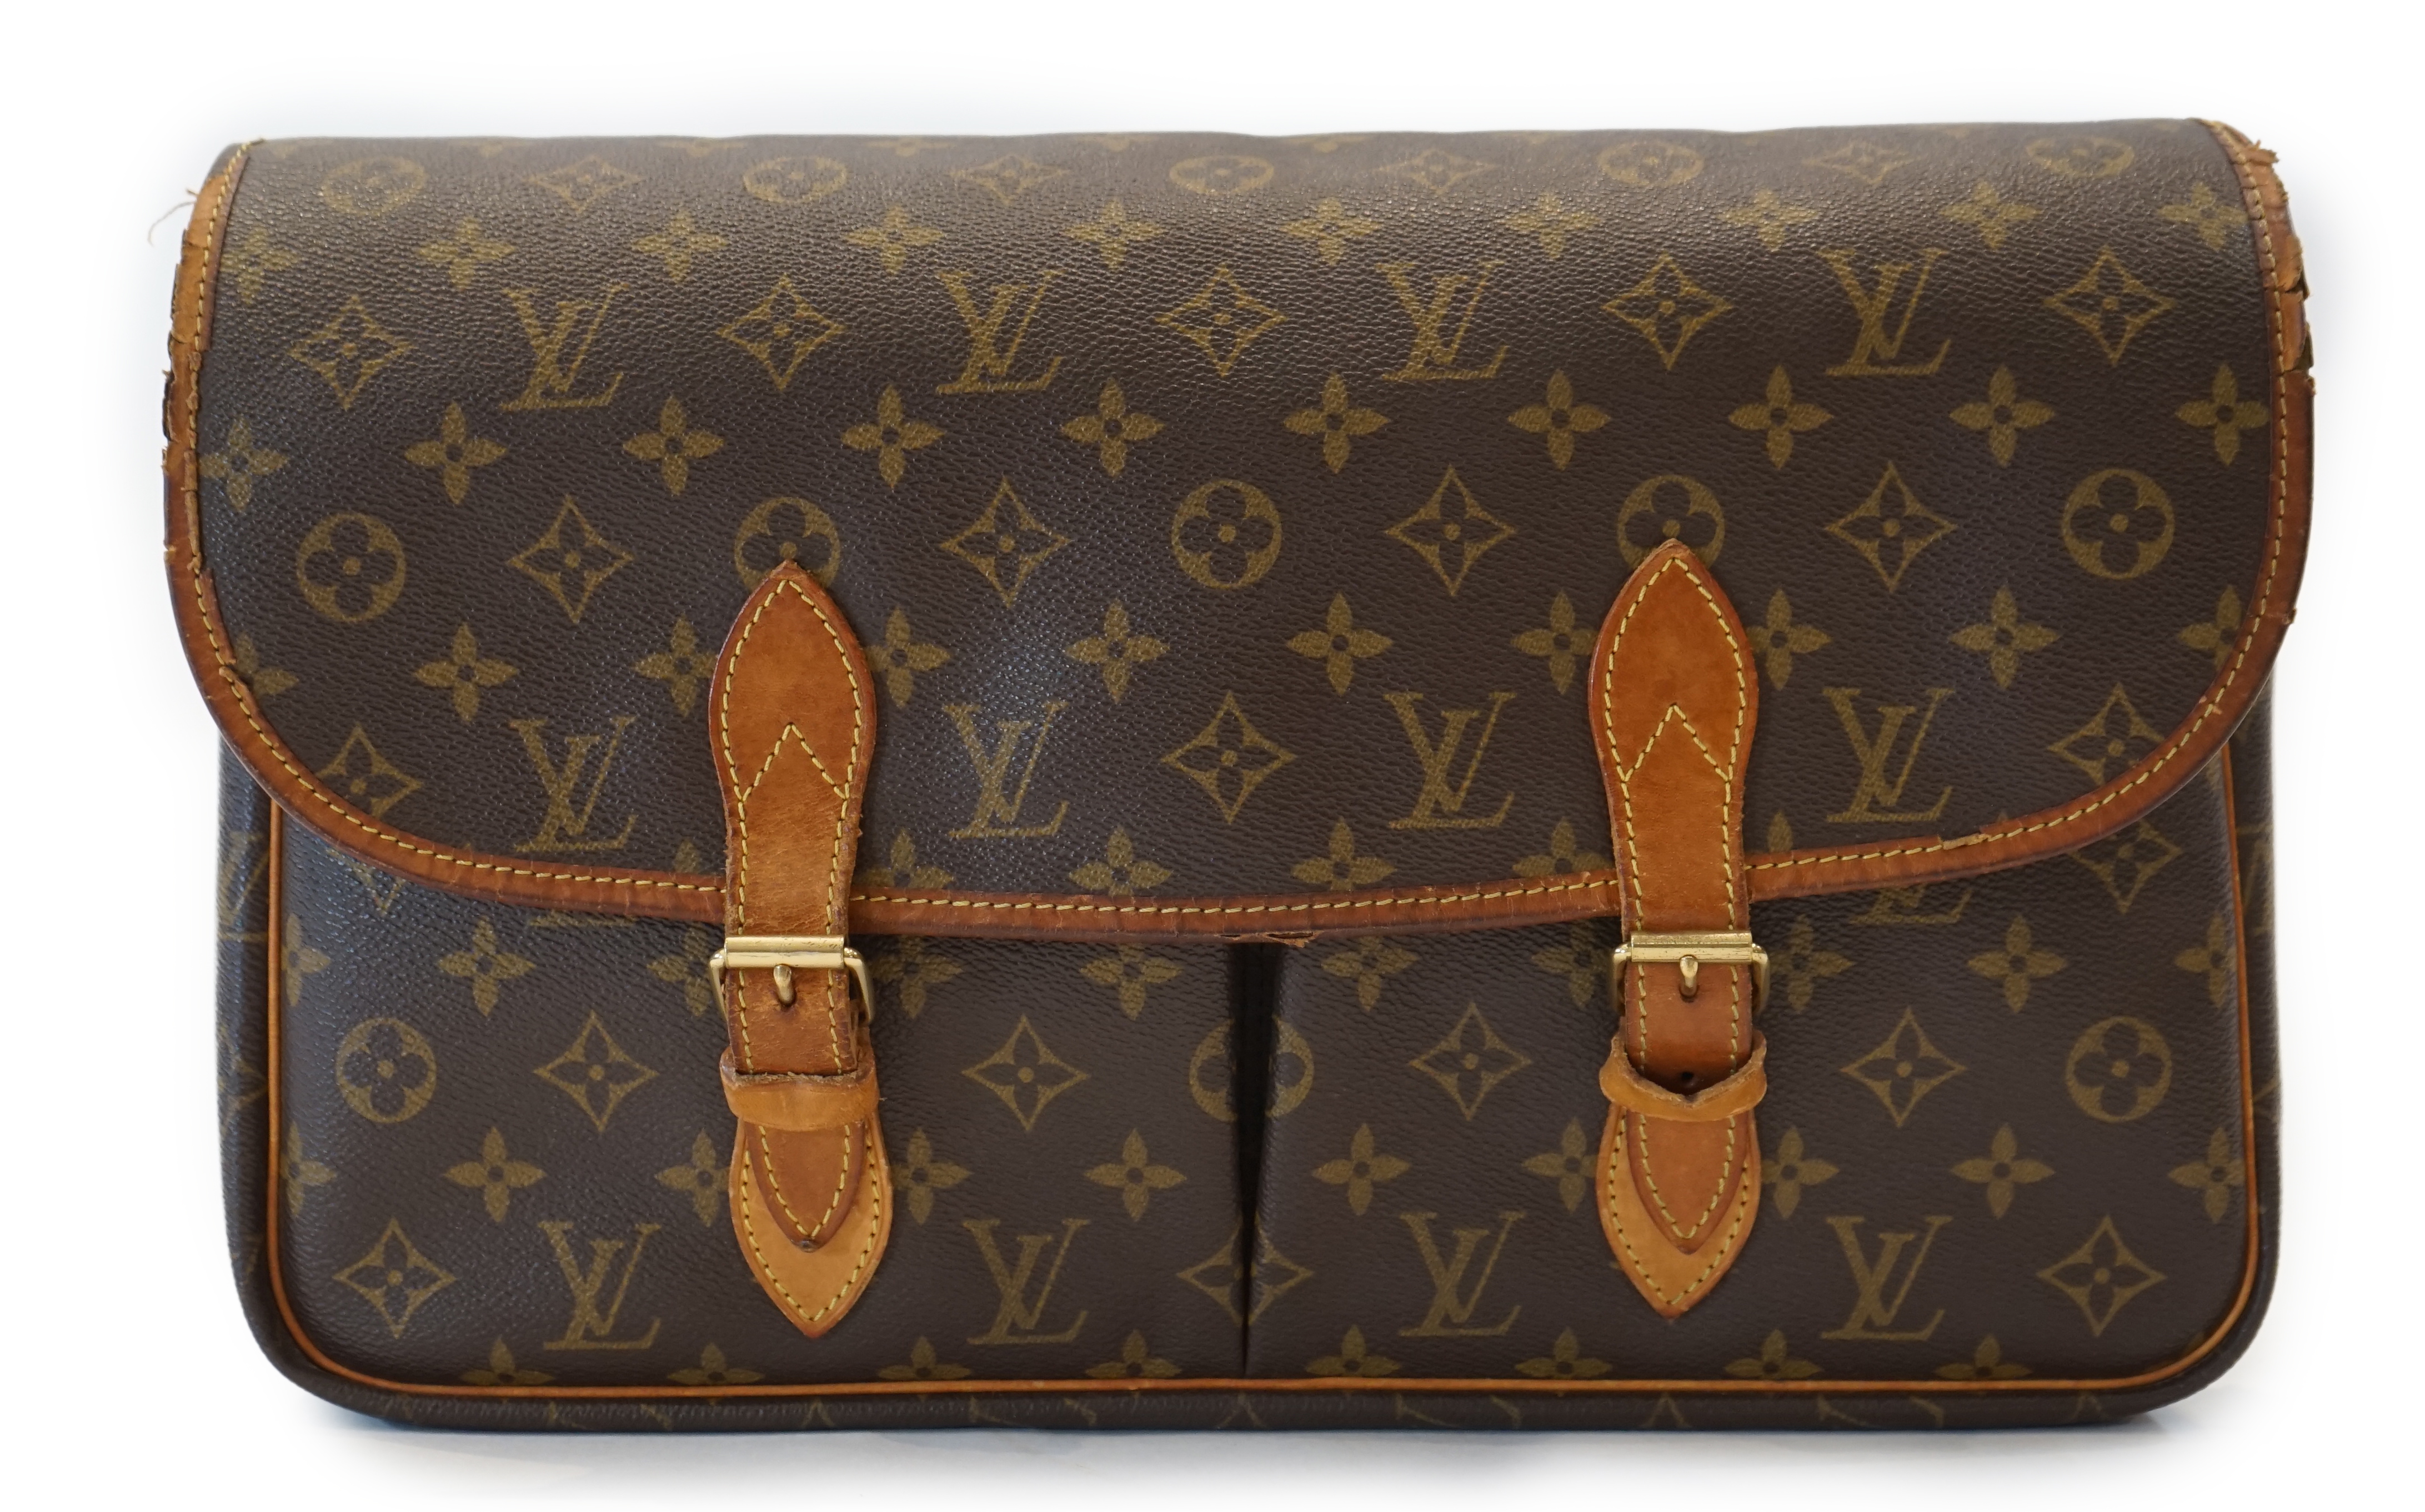 A Louis Vuitton Gibeciere bag width 4.5